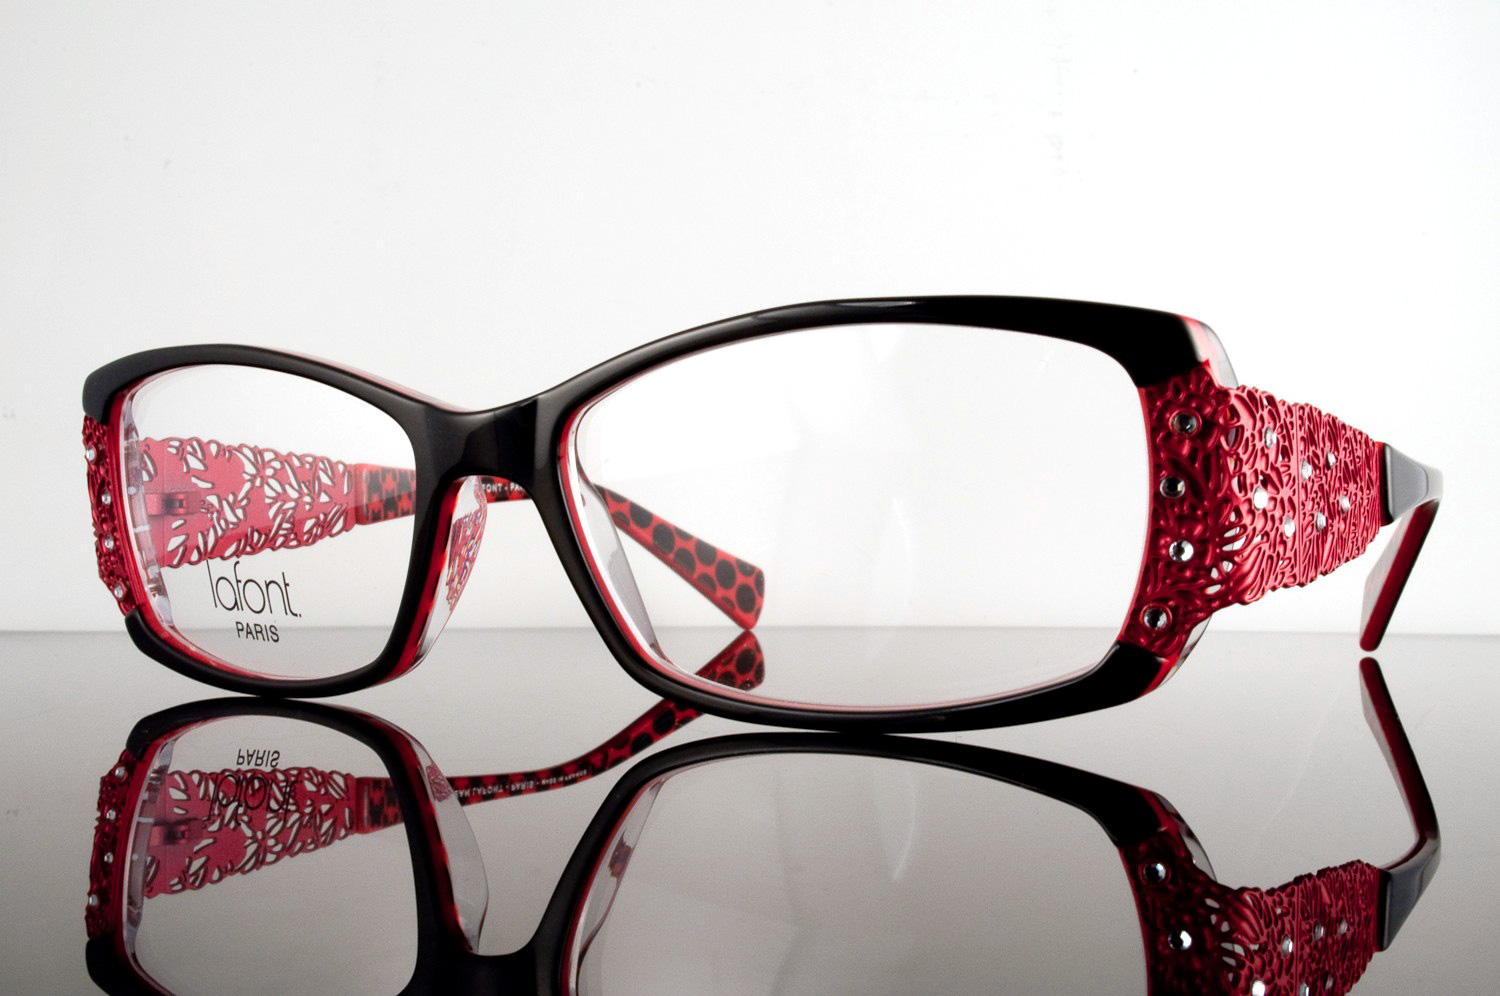 nice pair of red eyeglass frames